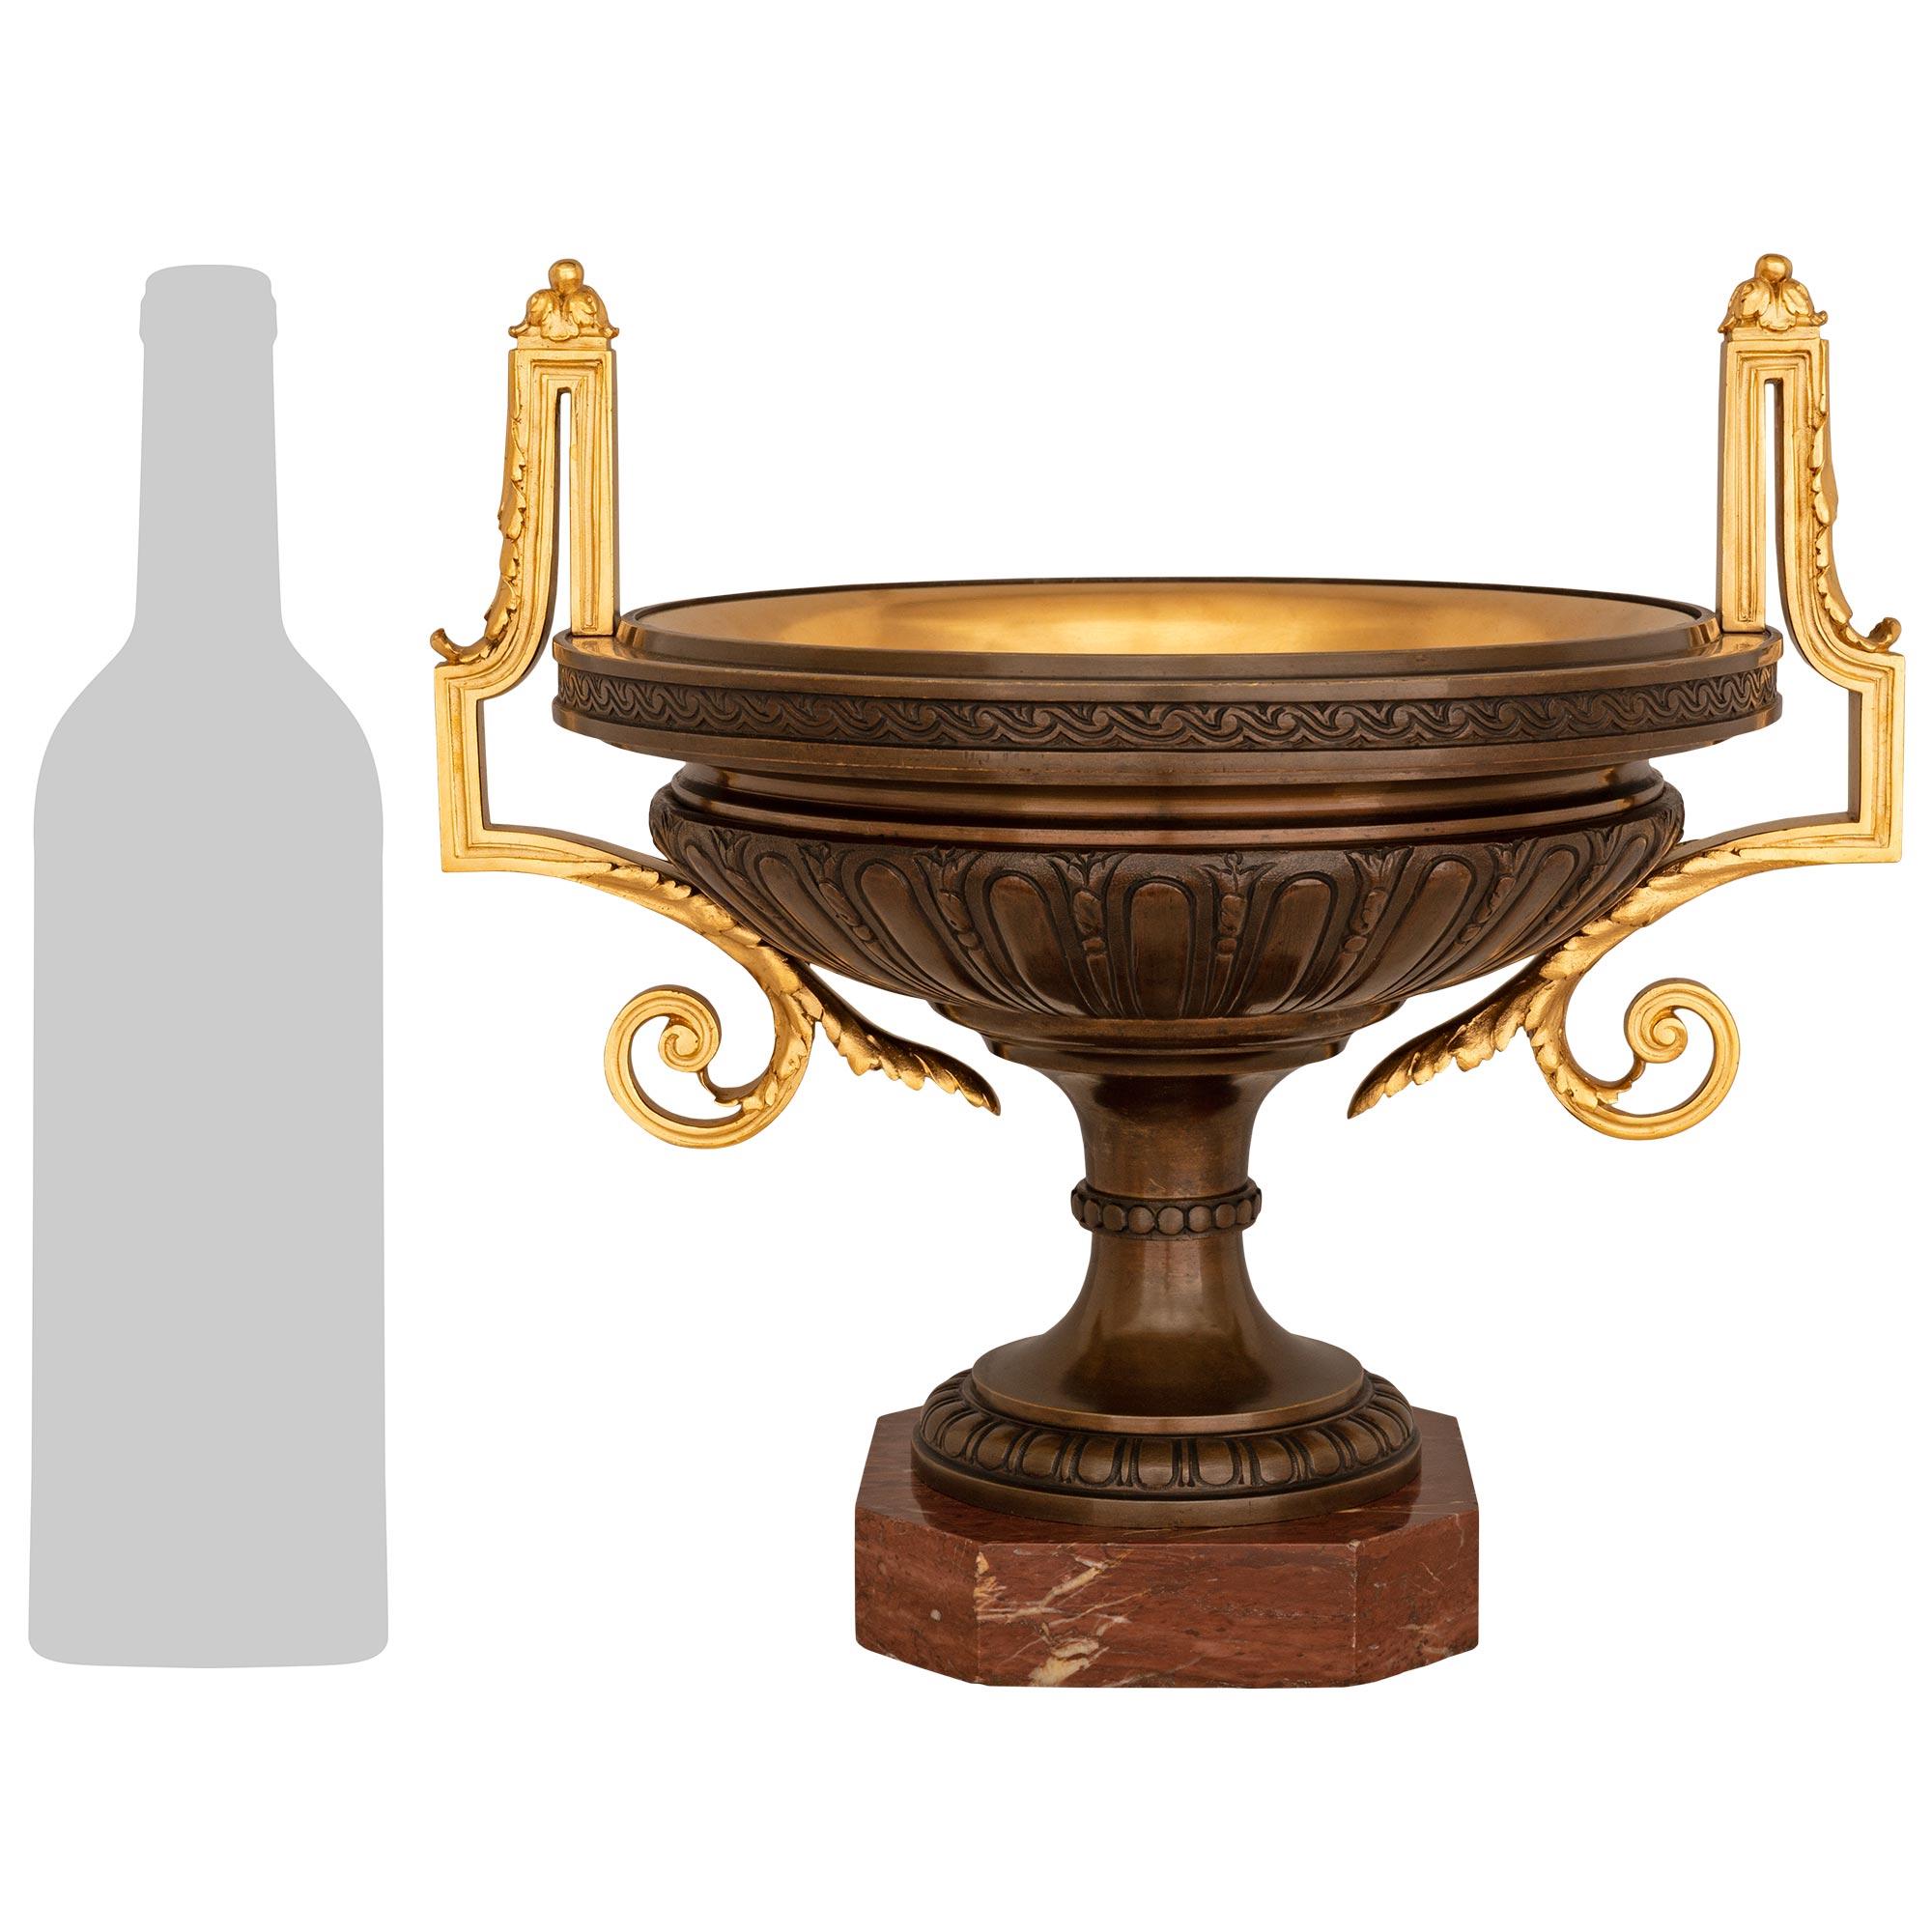 Ein atemberaubendes und äußerst dekoratives Paar französischer neoklassizistischer Urnen aus dem 19. Jahrhundert. Patinierte Bronze, Ormolu und Rouge Griotte Marmor Urnen. Jede beeindruckende Urne wird von einem achteckigen Sockel aus Rouge